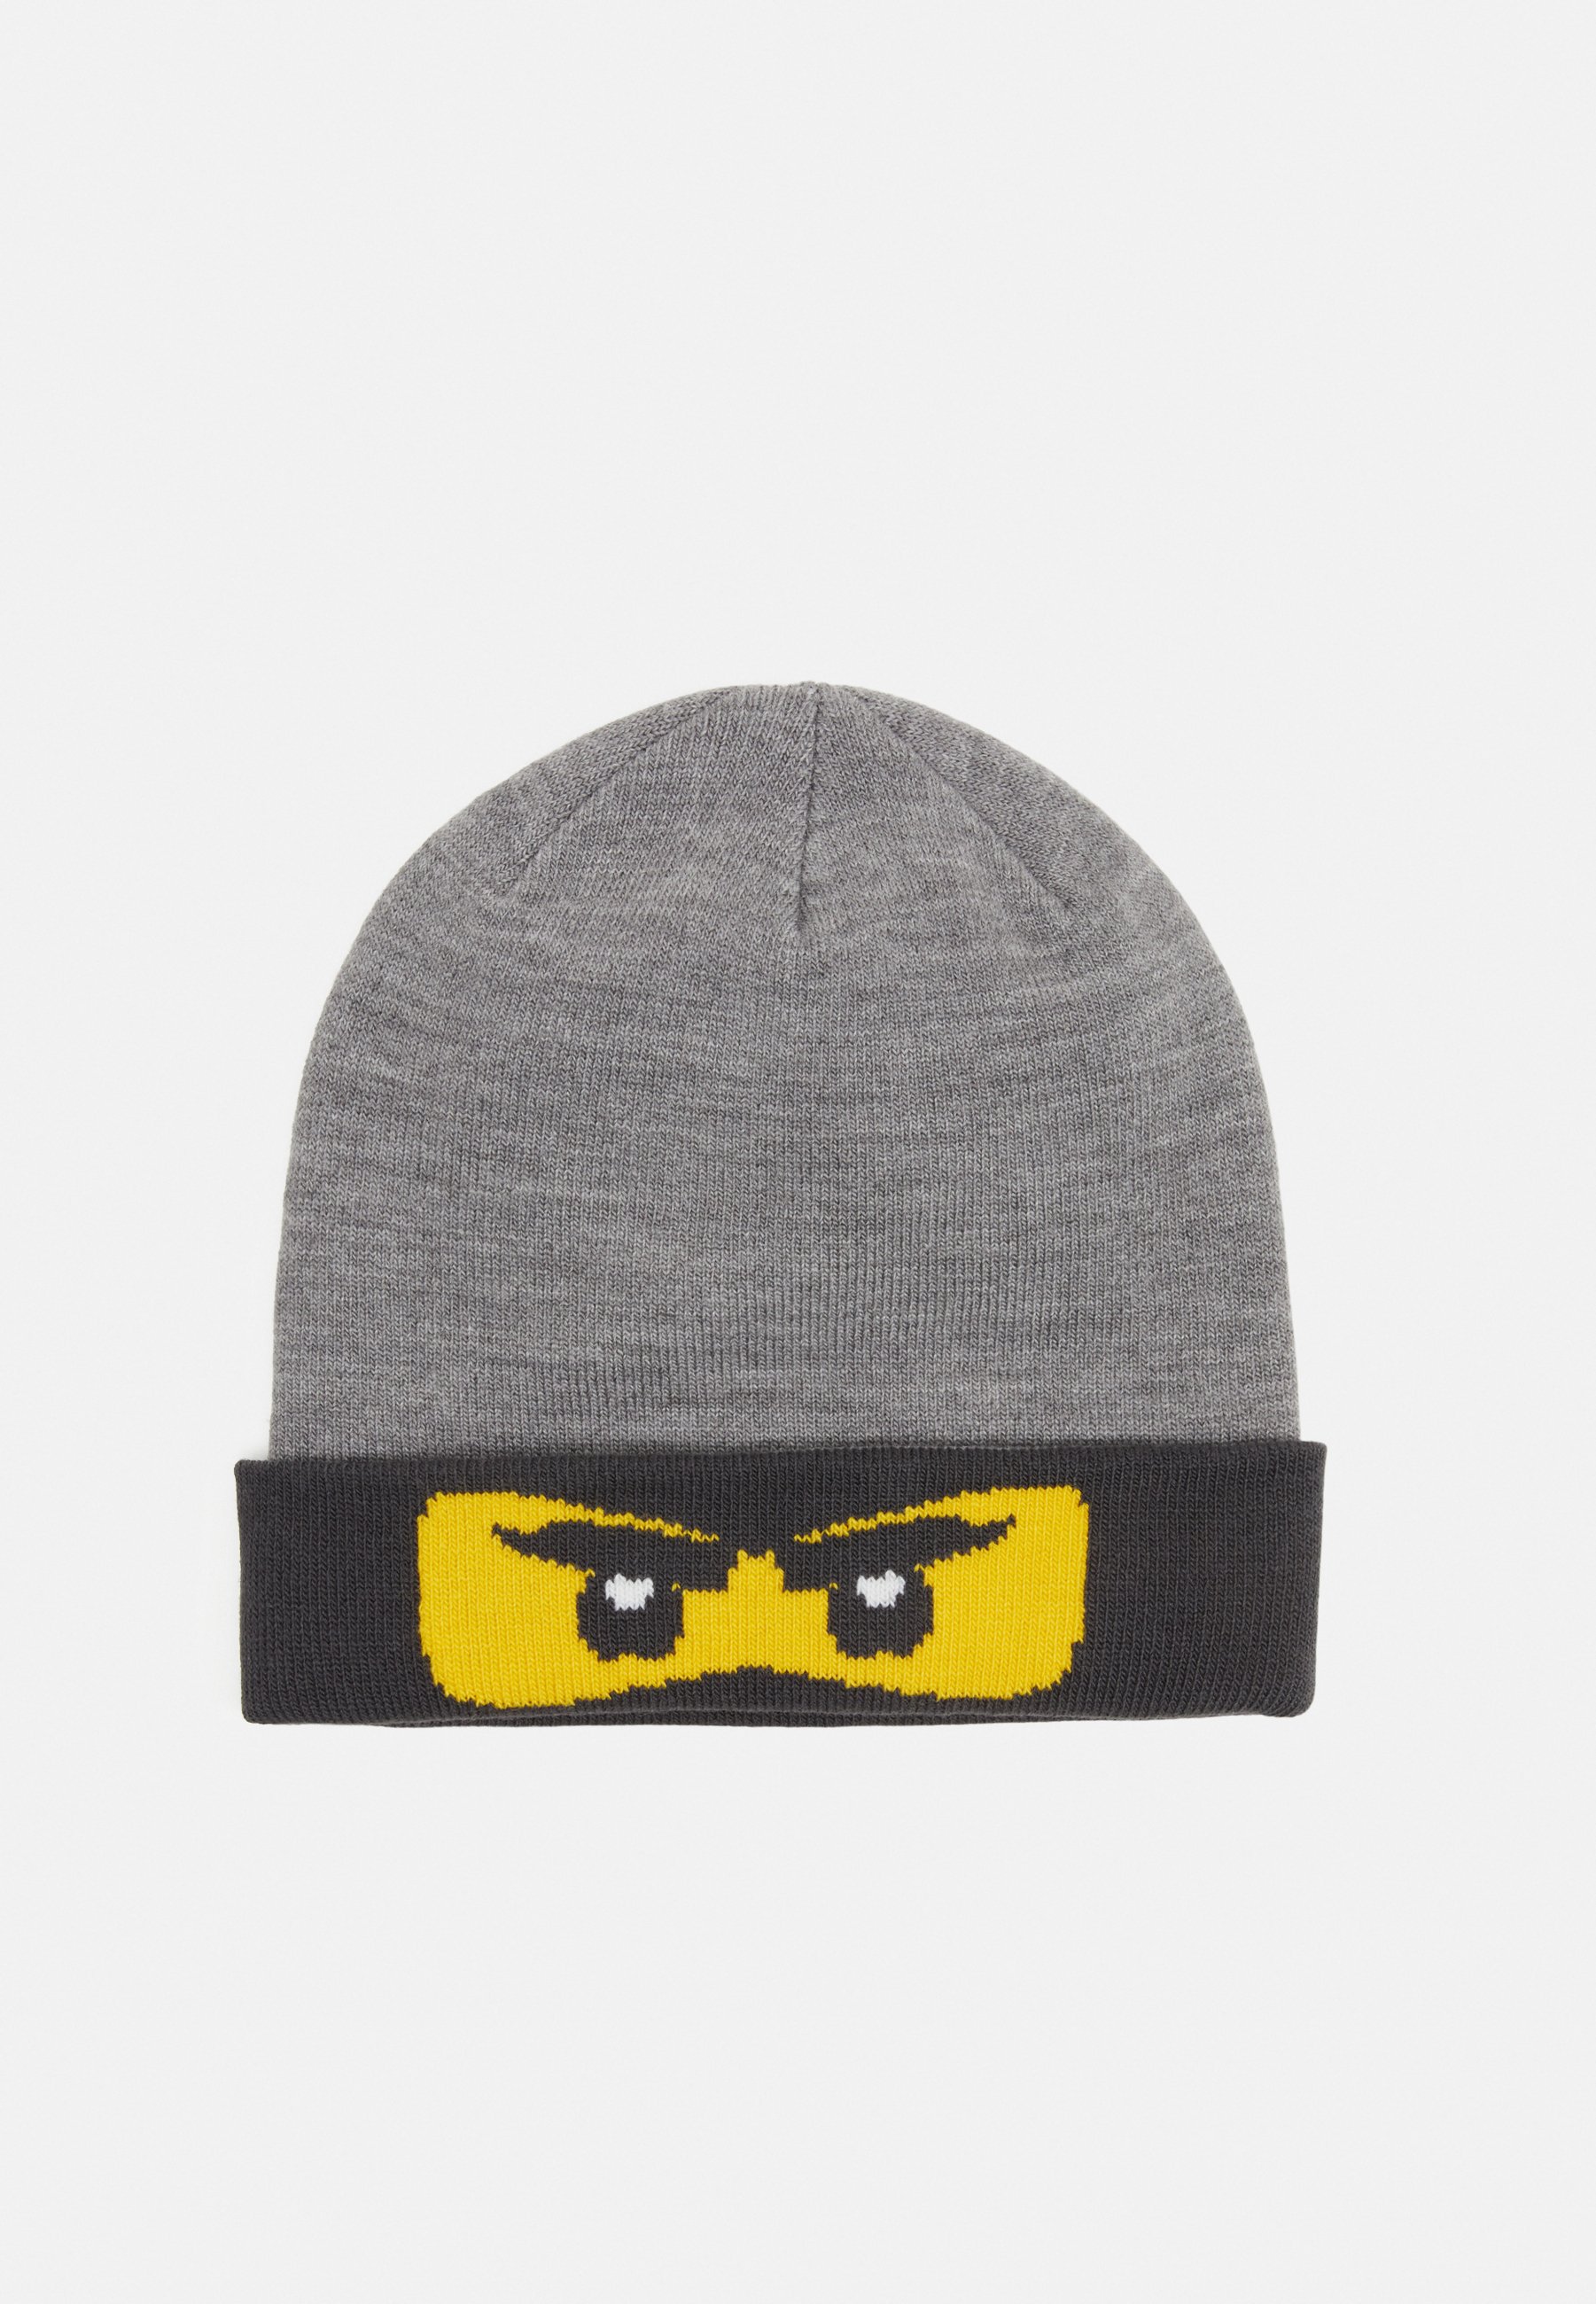 LEGO Wear HAT UNISEX - Mütze - grey melange/grau